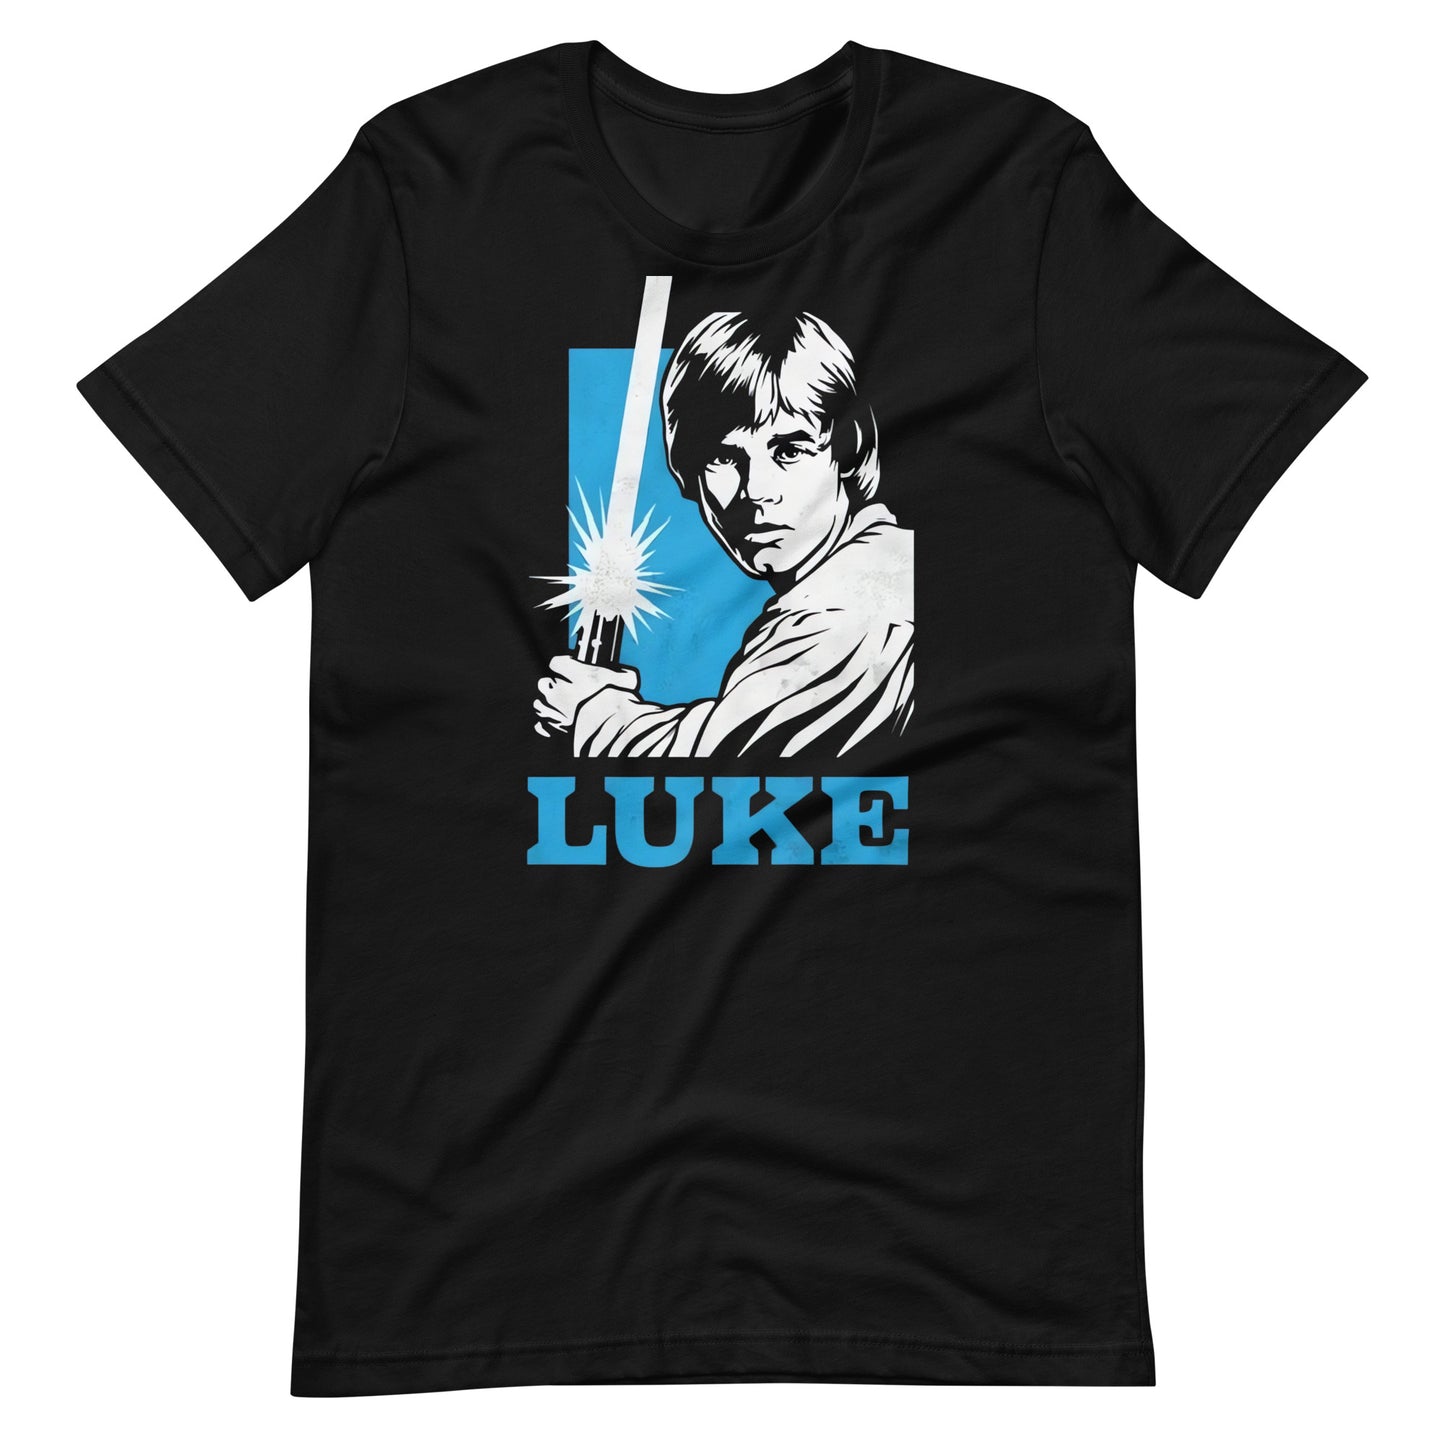 ¡Compra el mejor merchandising en Superstar! Encuentra diseños únicos y de alta calidad, Playera de Luke Skywalker